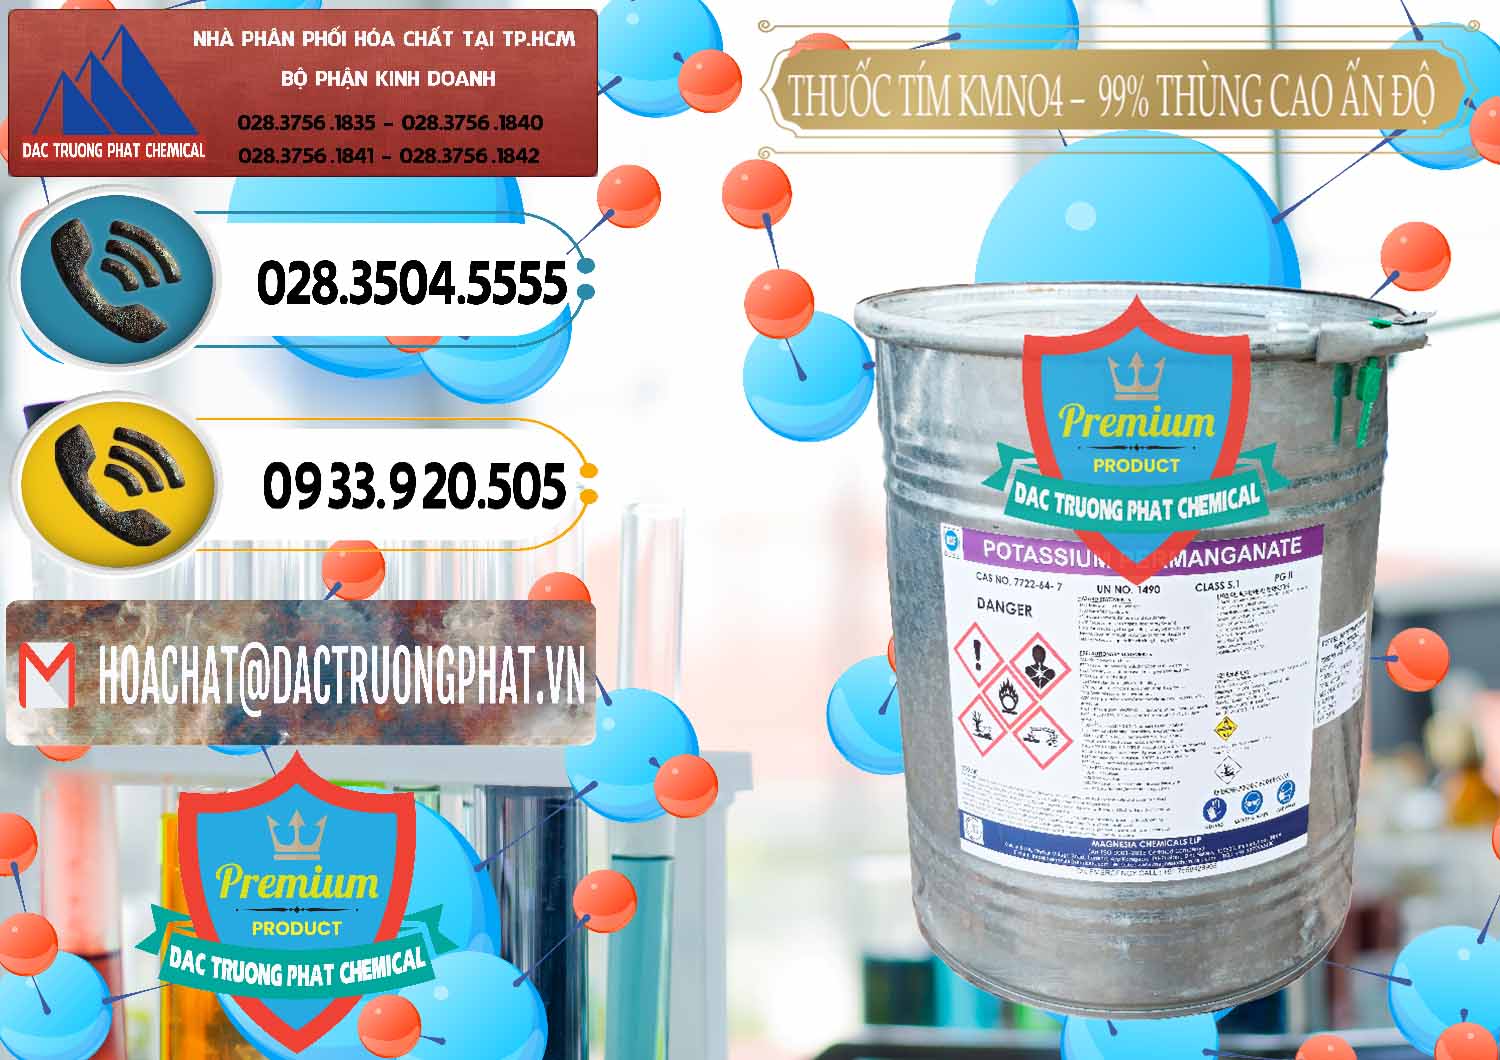 Nơi chuyên bán ( cung cấp ) Thuốc Tím - KMNO4 Thùng Cao 99% Magnesia Chemicals Ấn Độ India - 0164 - Nhà phân phối và bán hóa chất tại TP.HCM - hoachatdetnhuom.vn